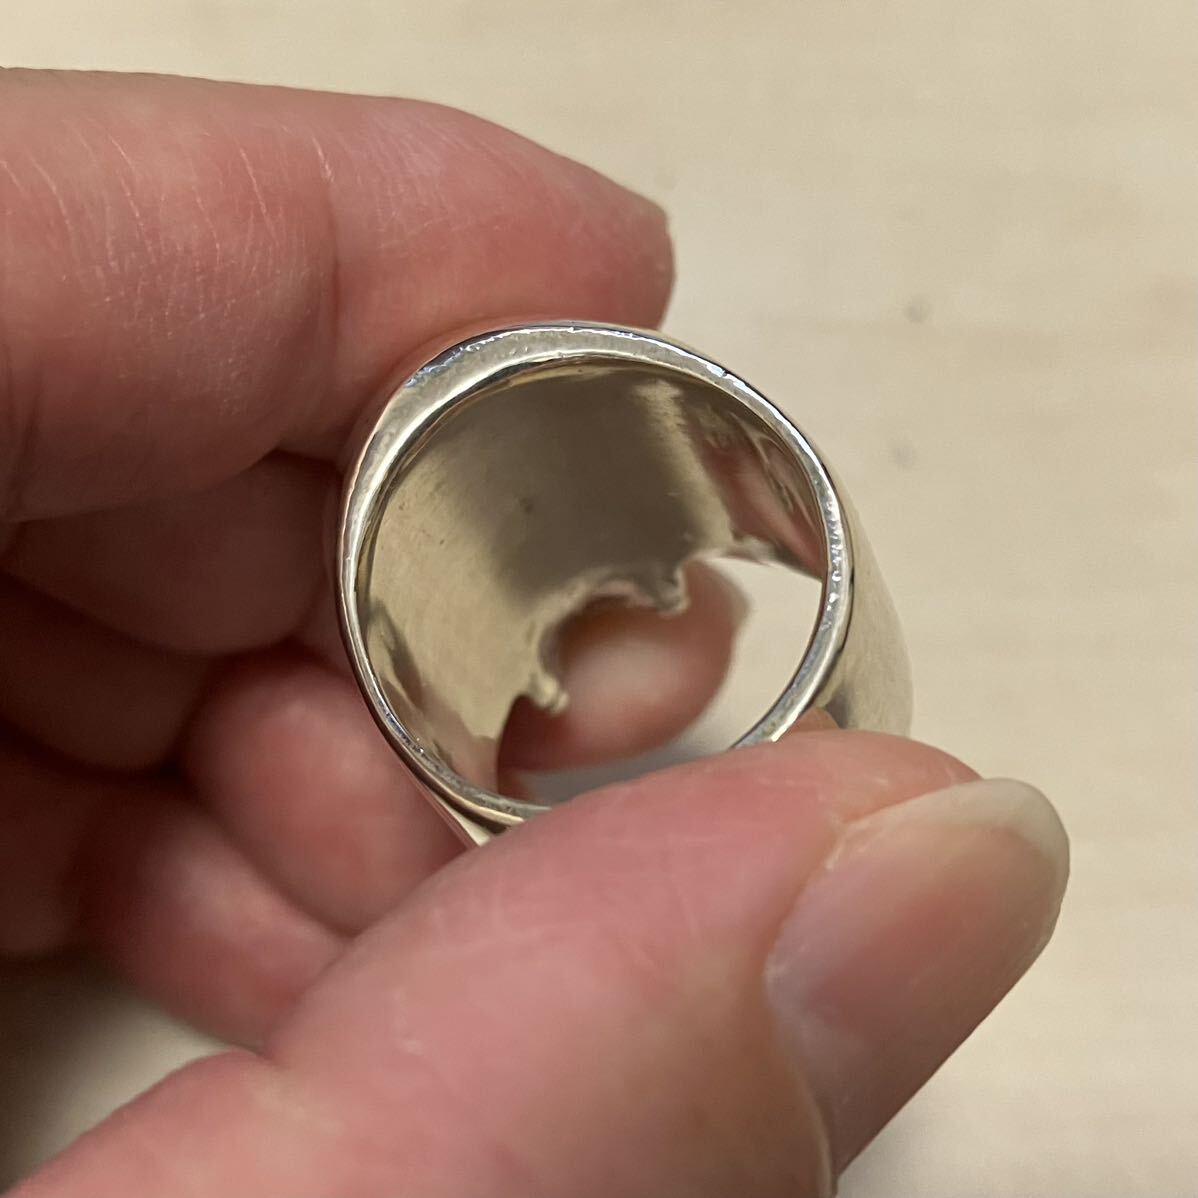  превосходный товар Skull кольцо кольцо серебряное кольцо SV925 BEAMS Beams bpr аксессуары сделано в Японии 